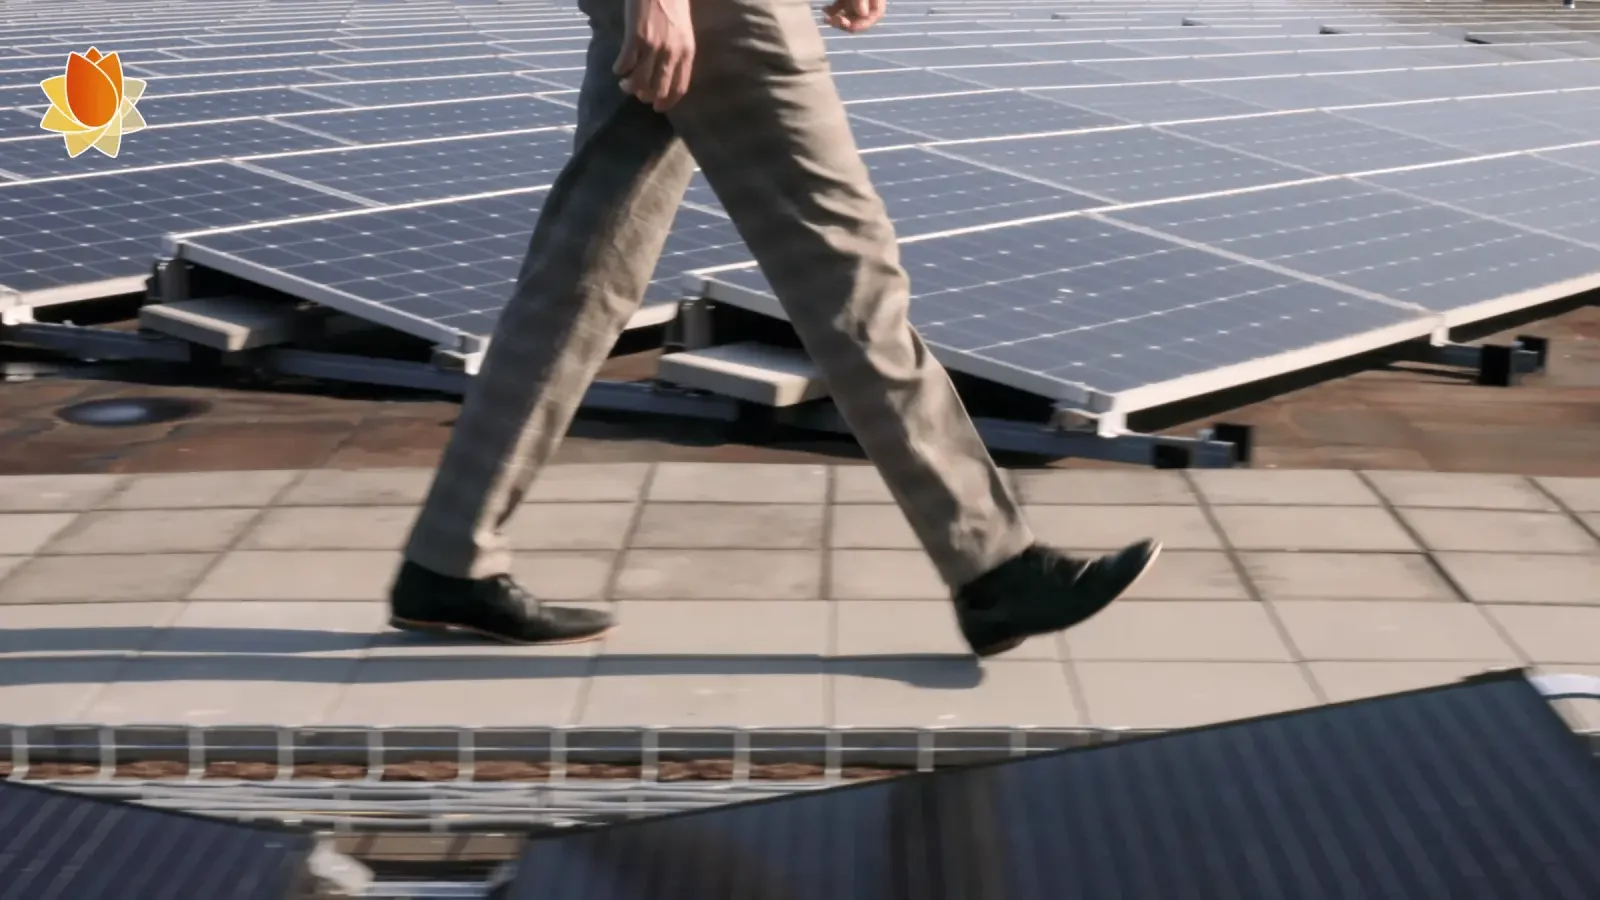 De benen van een man in pak die wandelt tussen rijen zonnepanelen